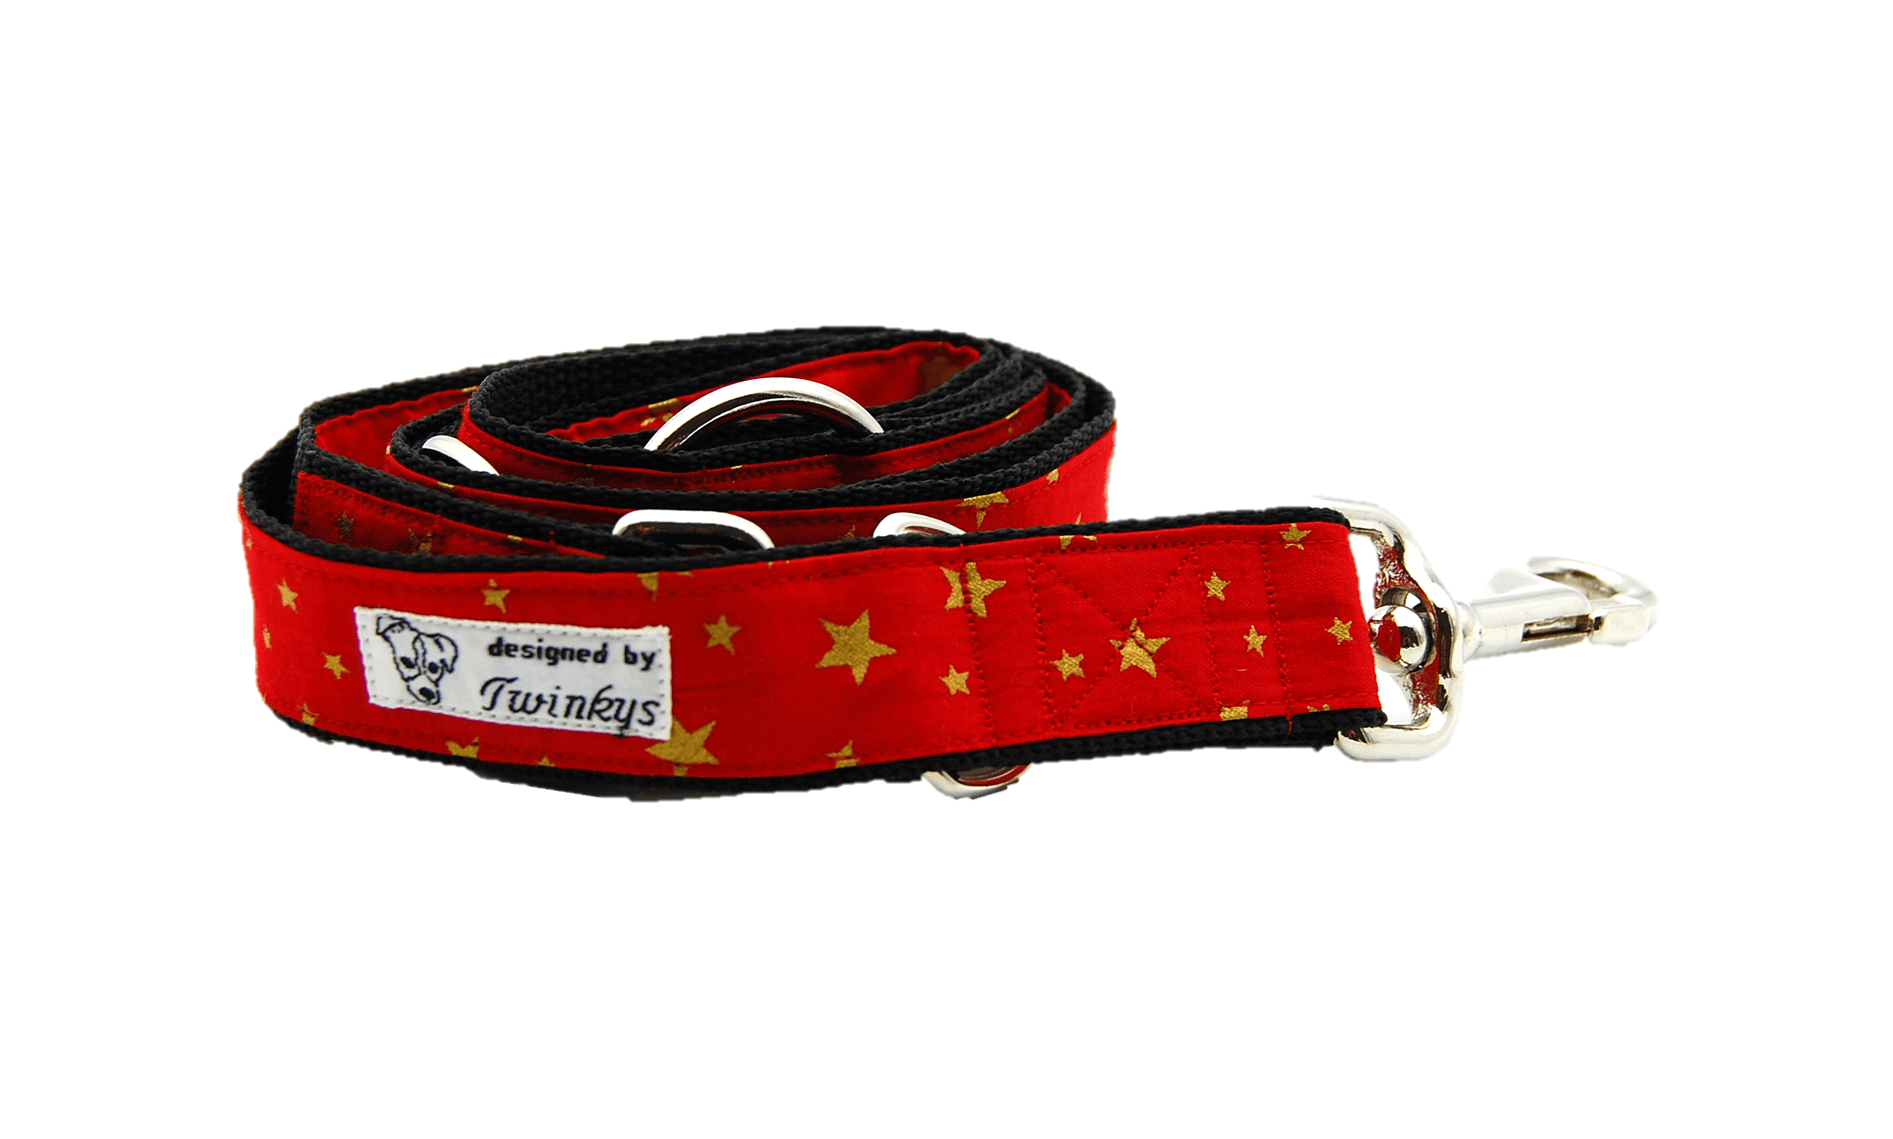 Dreifach verstellbare Leine rot mit goldenen Sternchen für große Hunde